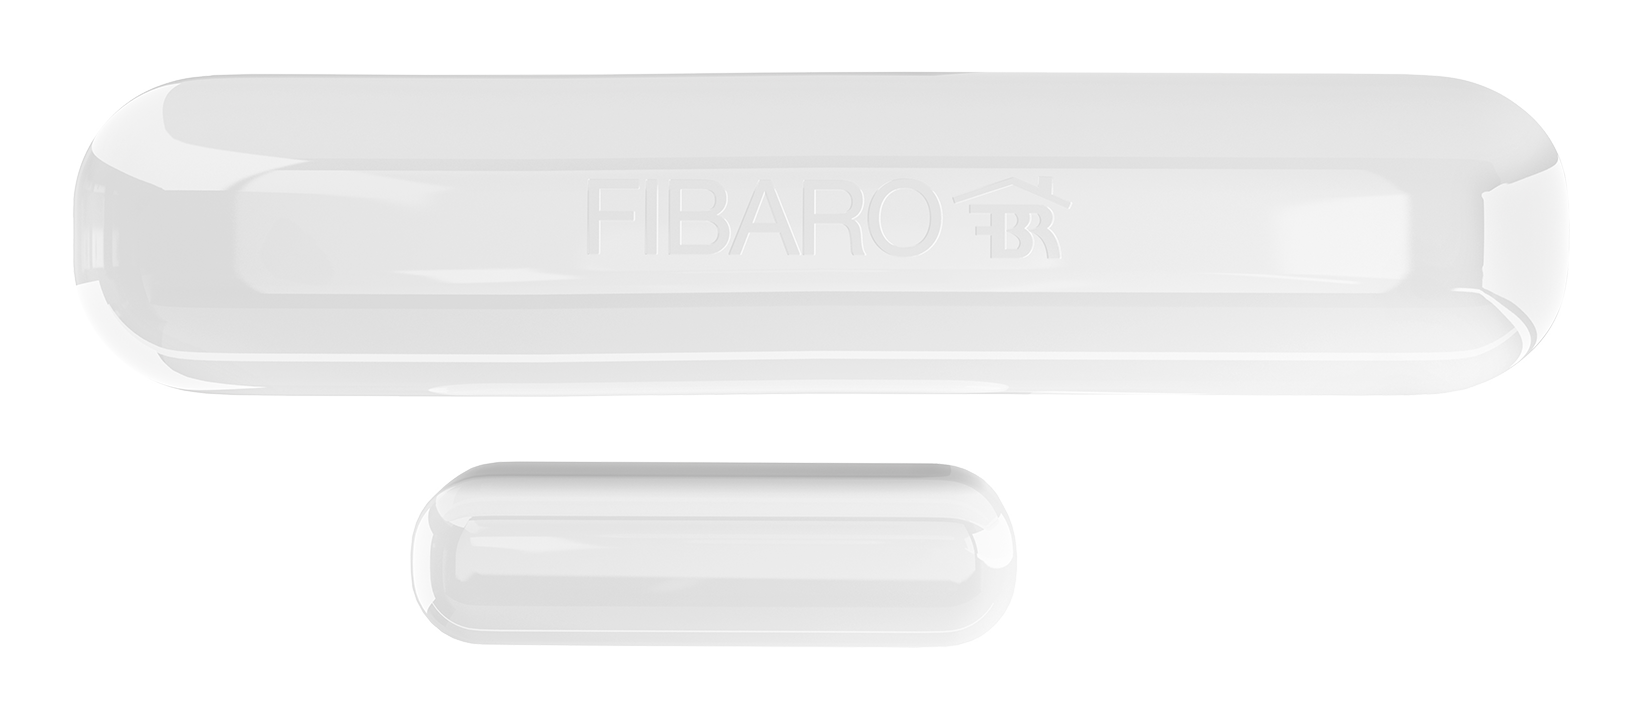 Fibaro Door/Window Sensor